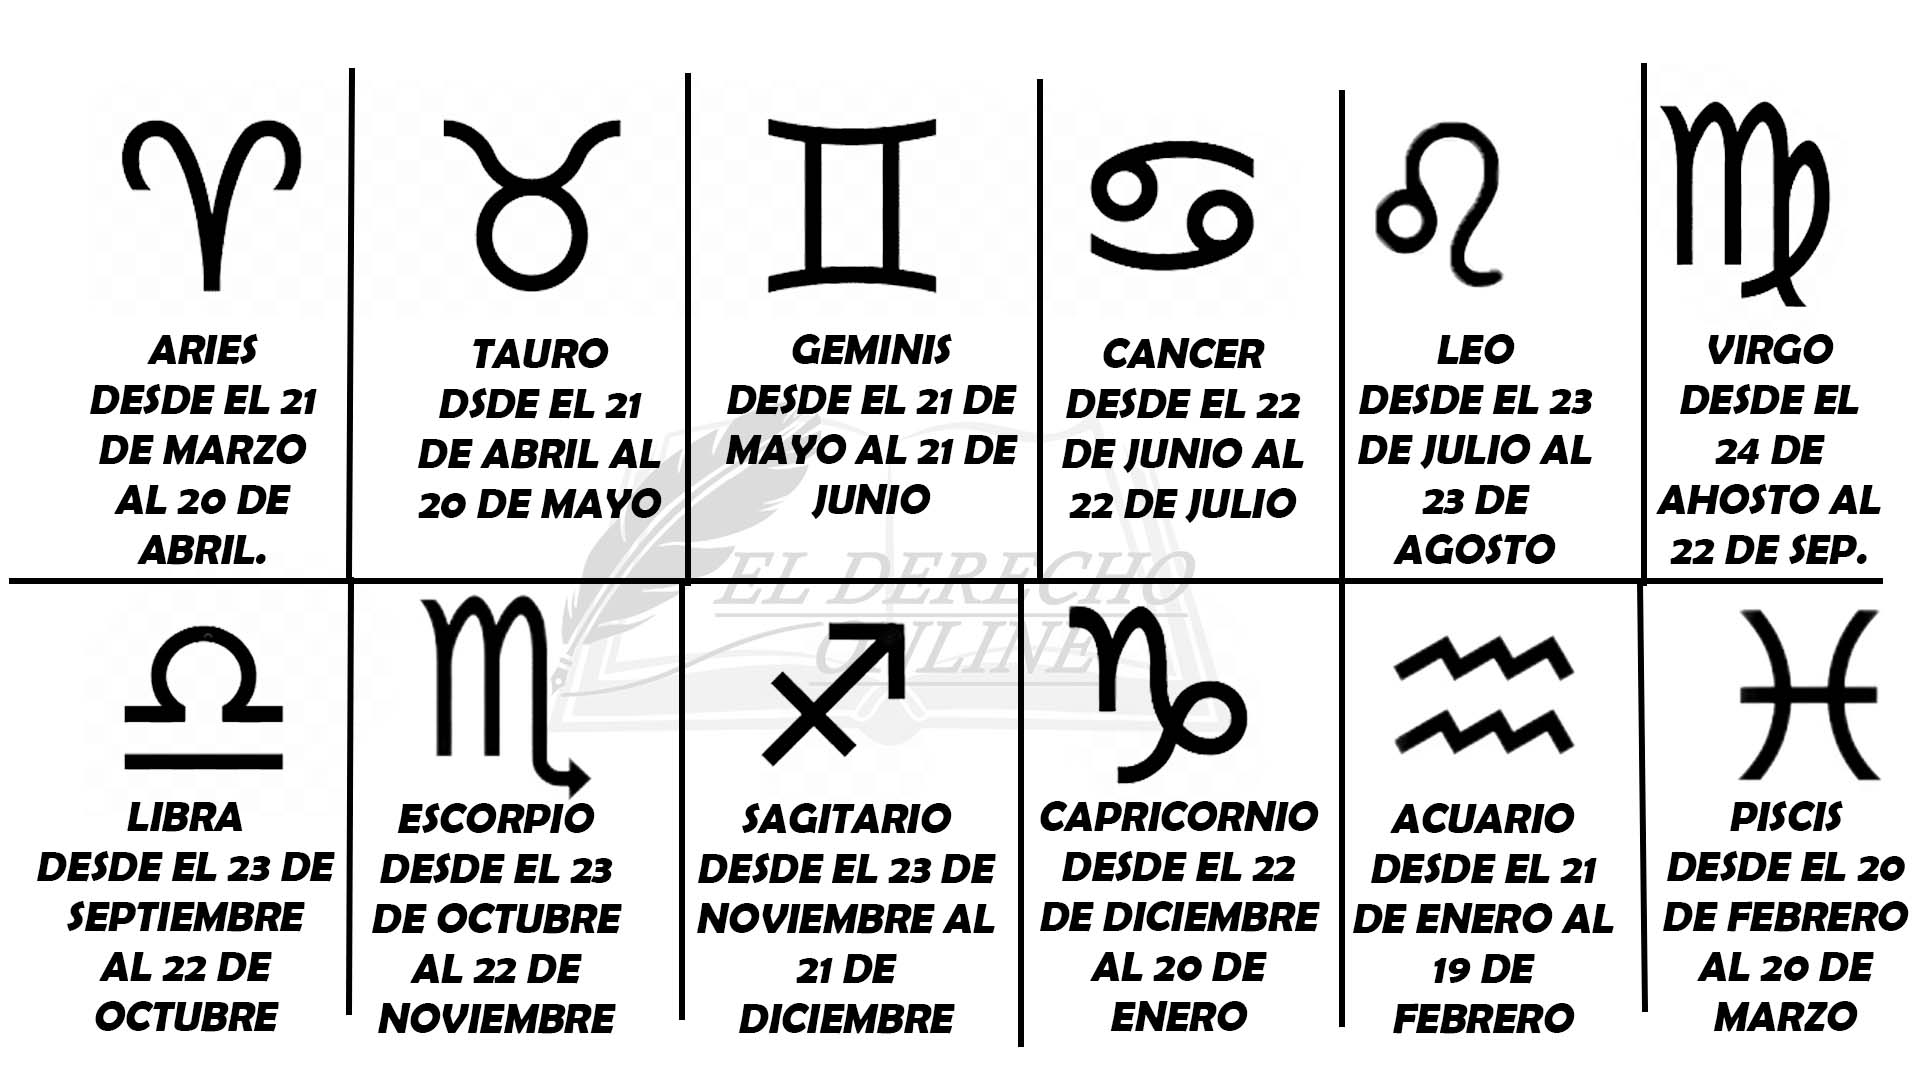 ¿Cuáles son las fechas de los Signos del Zodiaco?